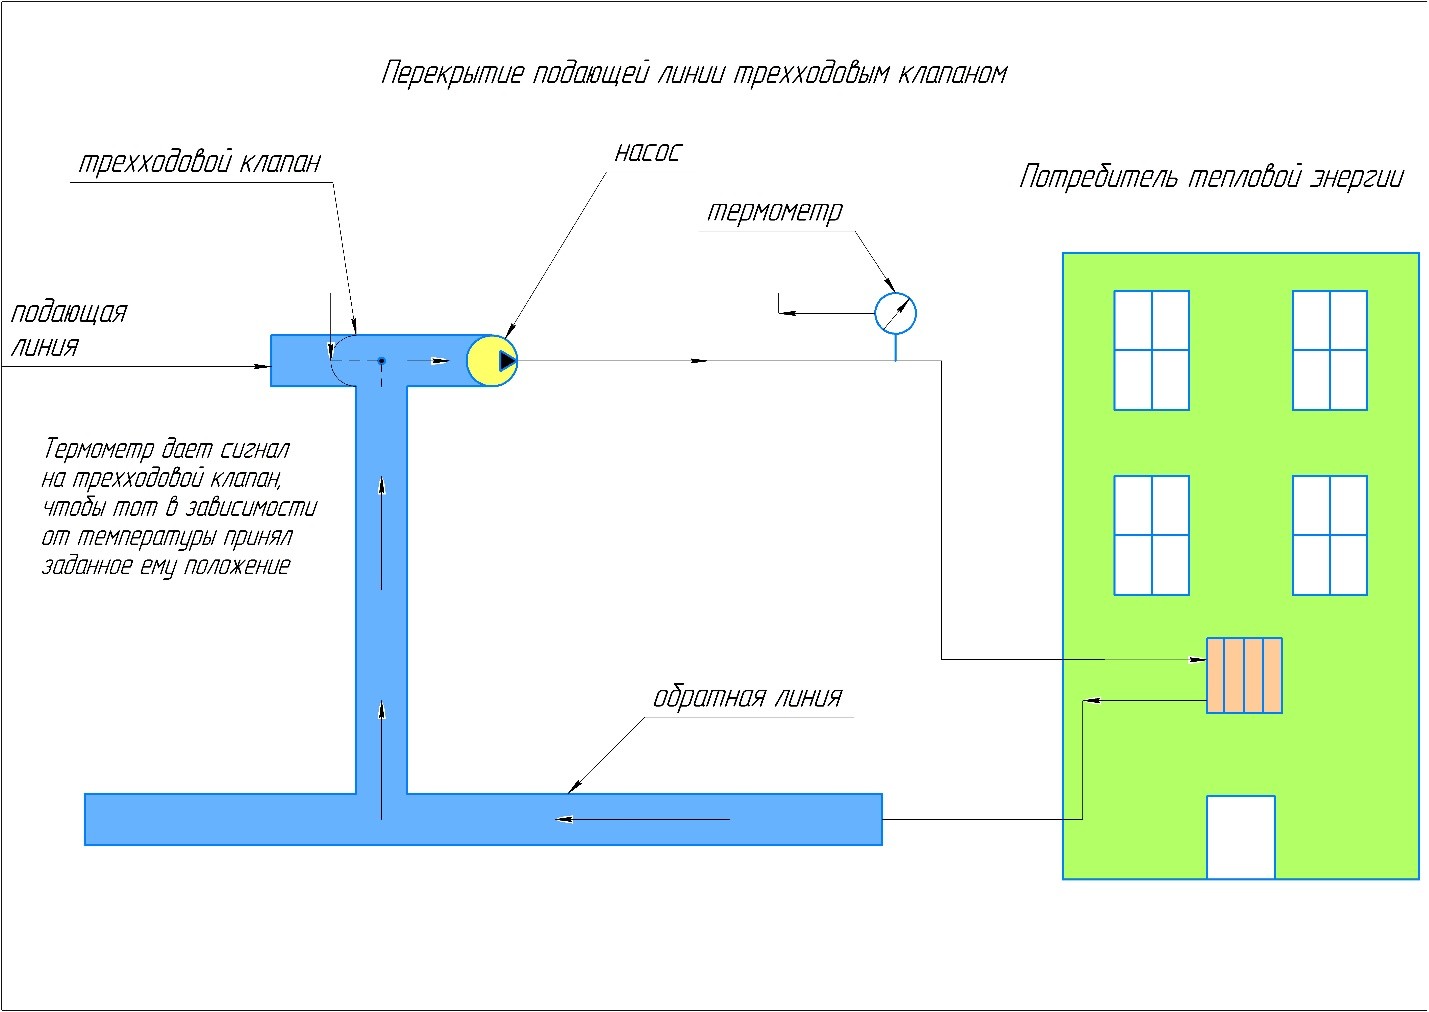 Схема работы трёхходового клапана в индивидуальном тепловом пункте.